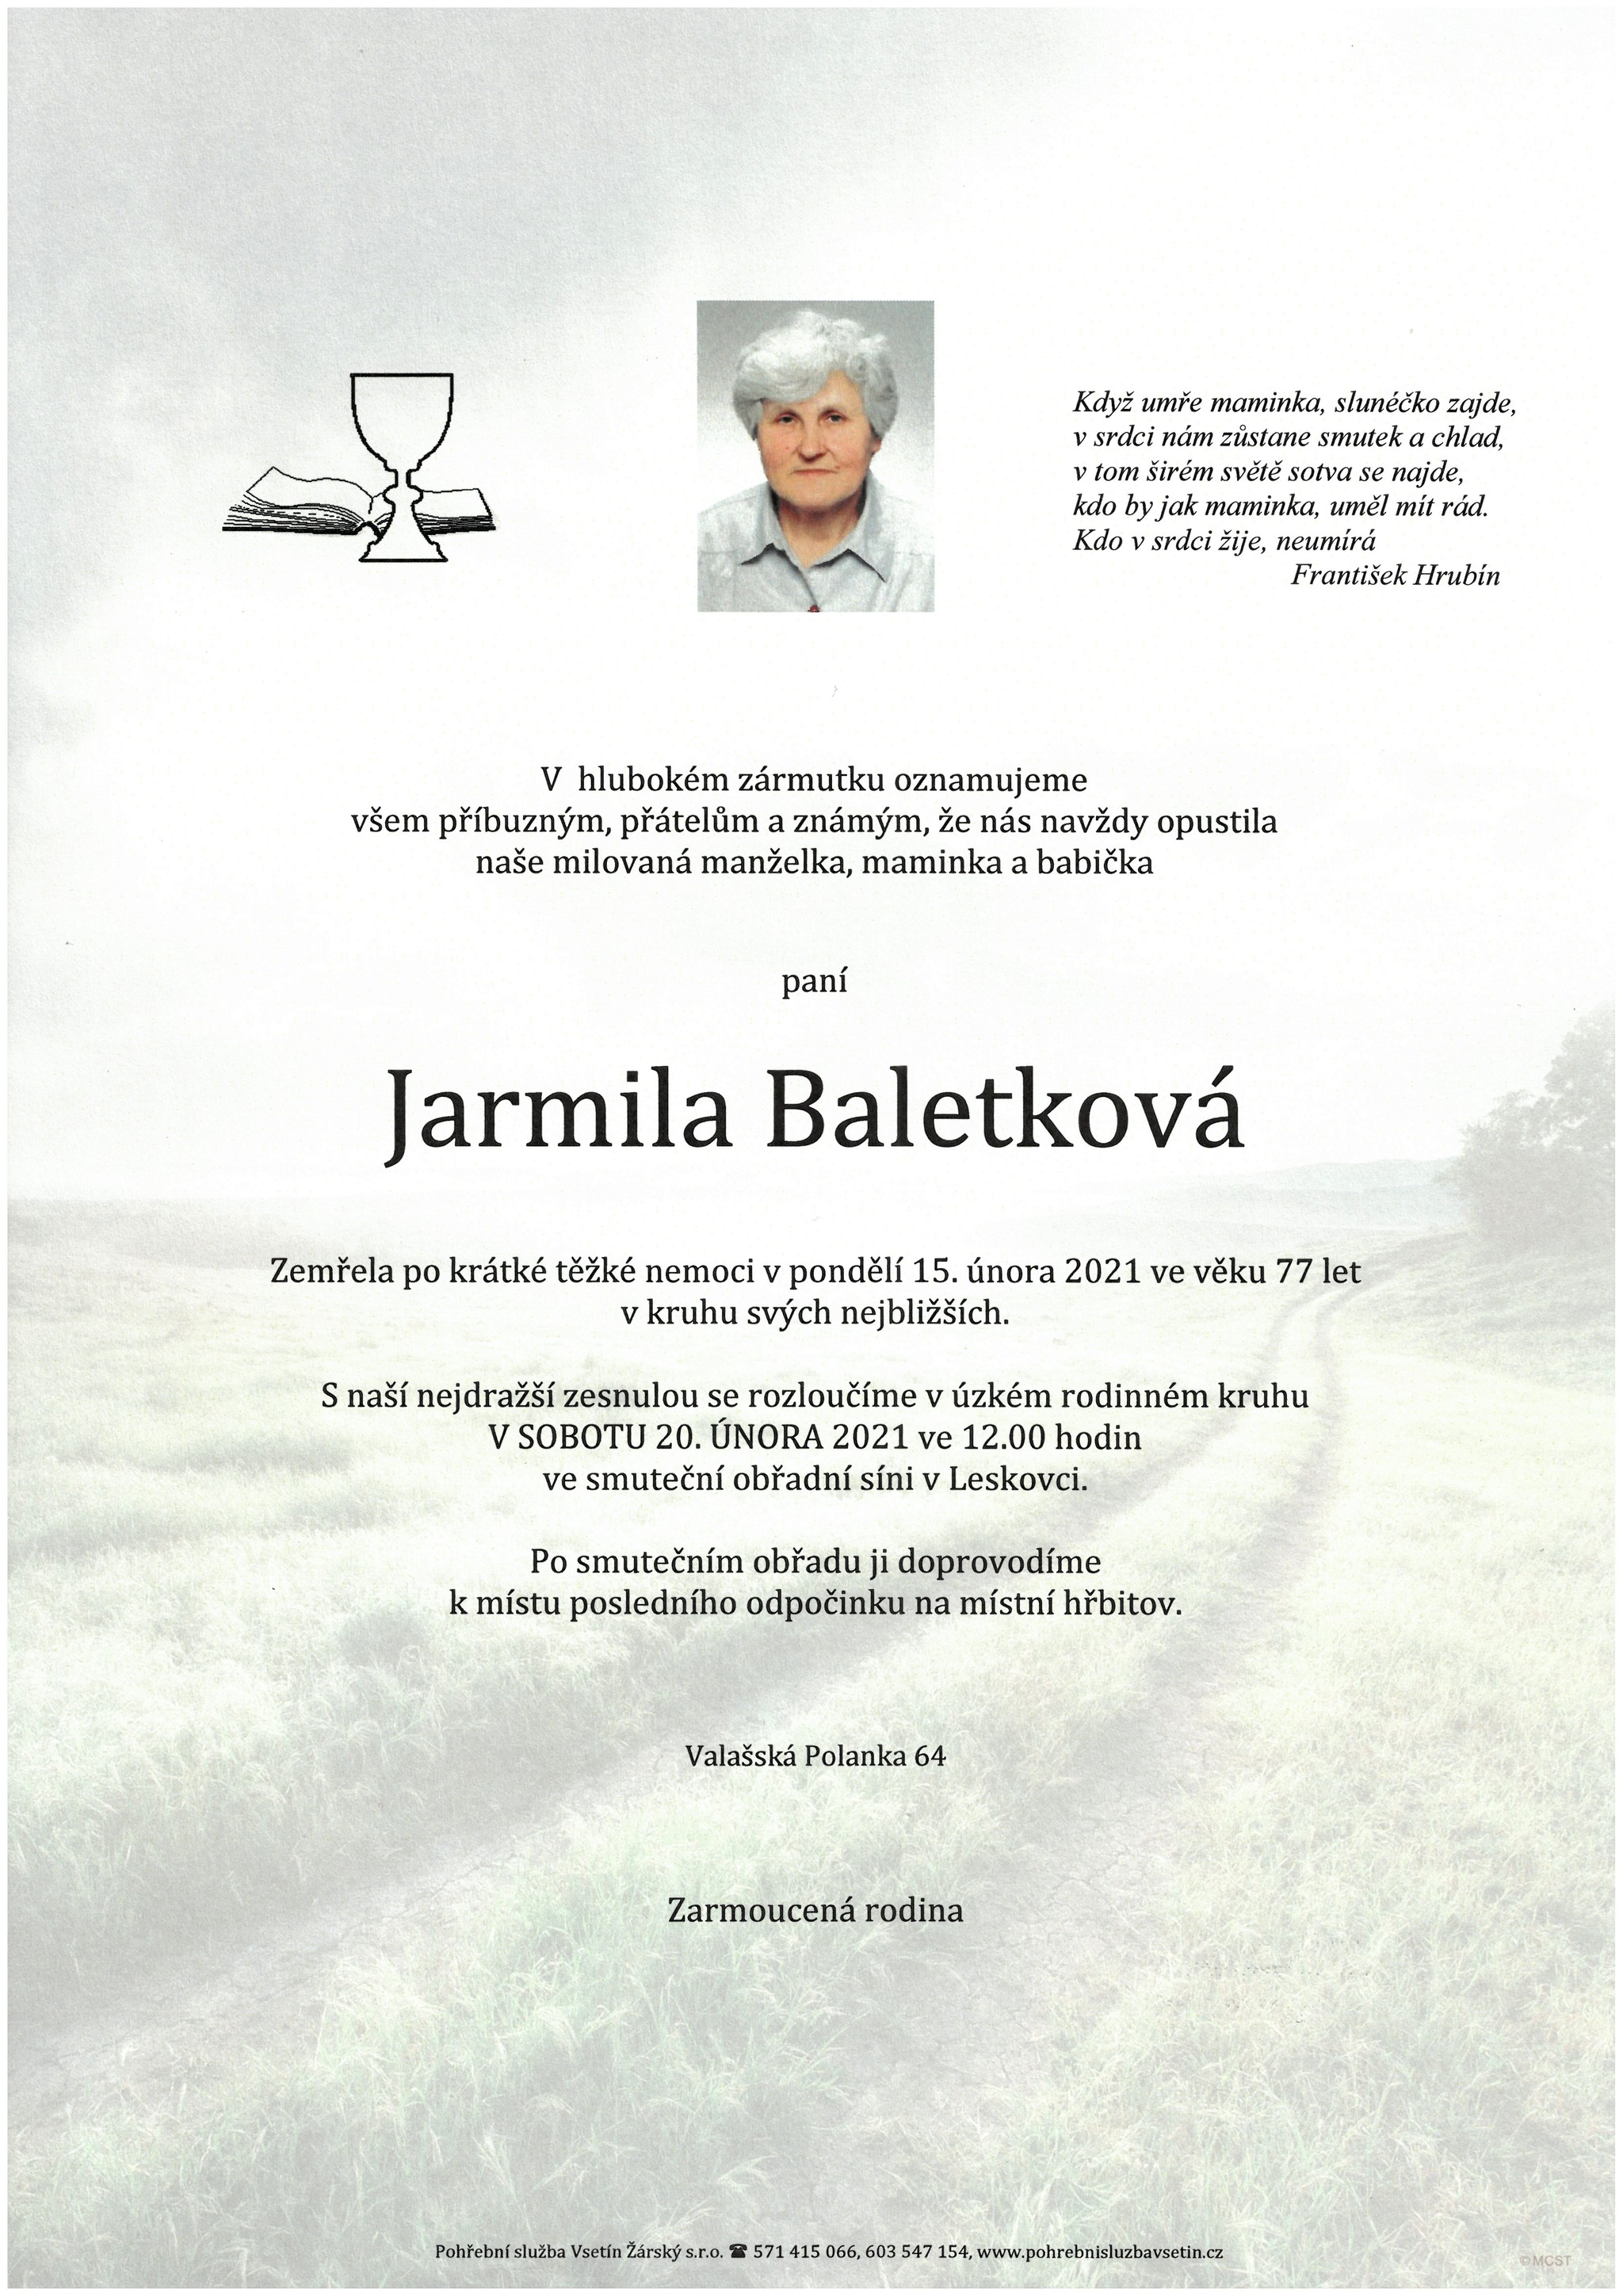 Jarmila Baletková